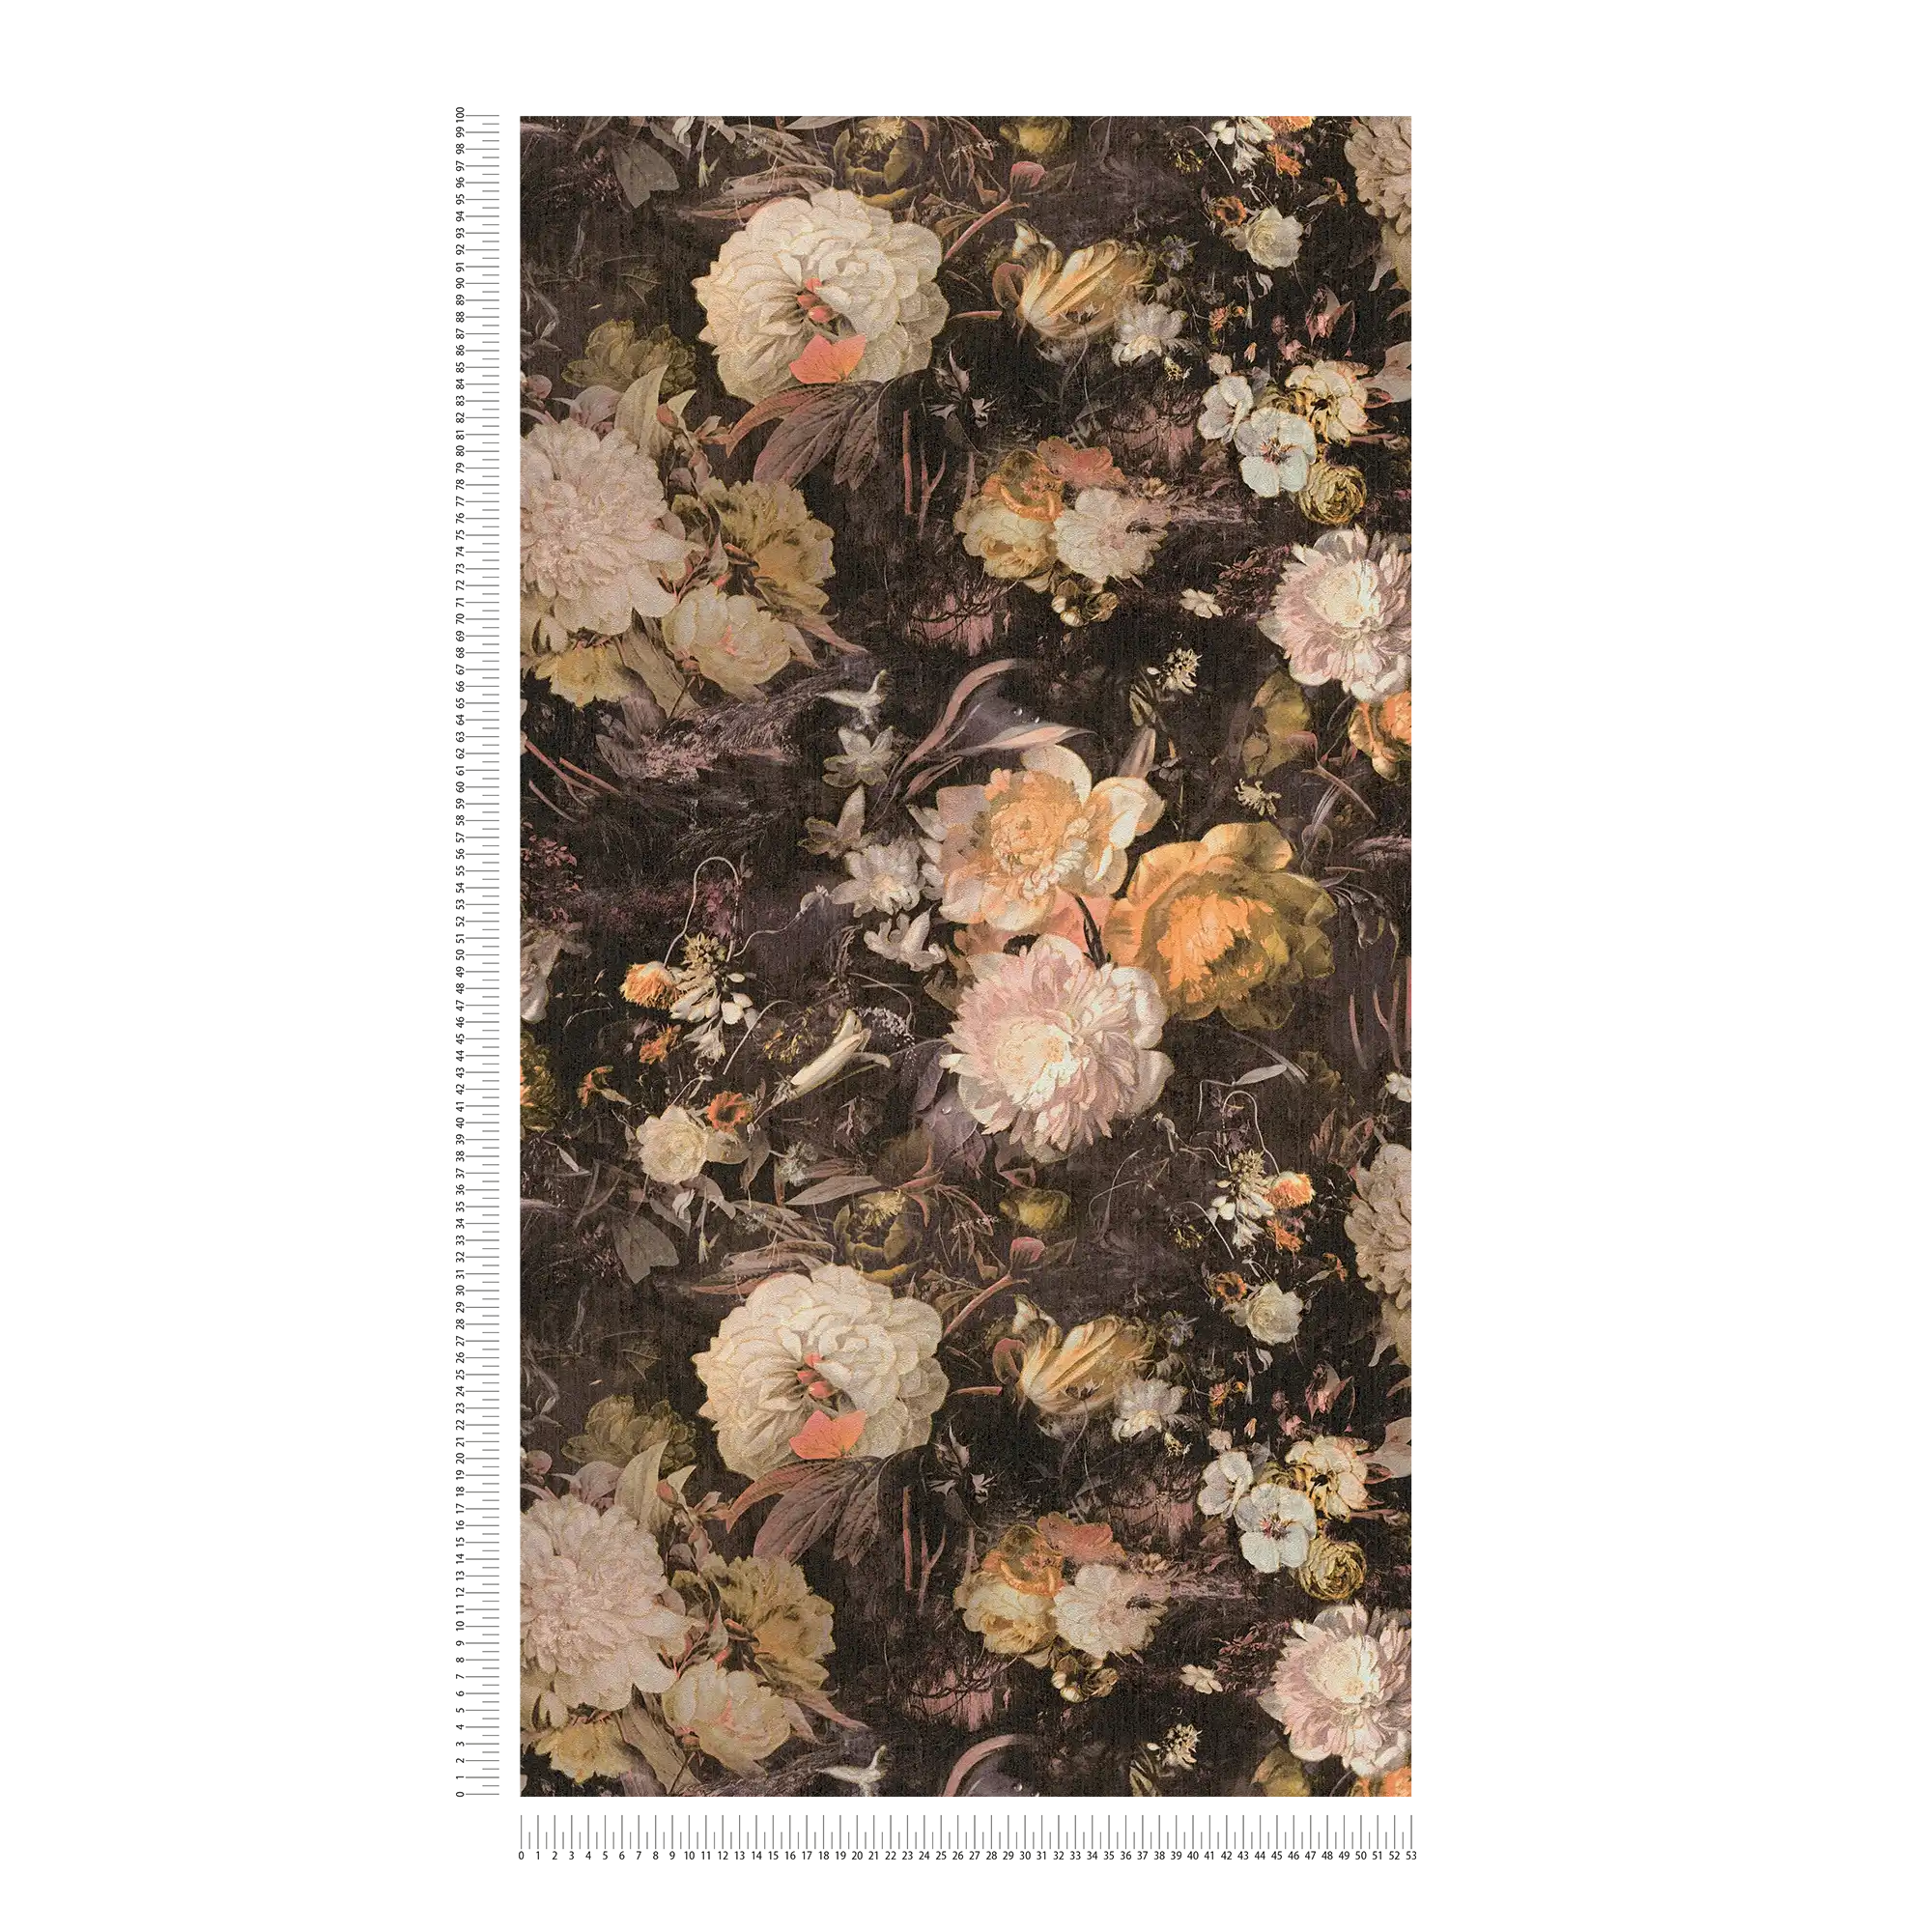             Papel pintado floral de estilo artístico con rosas - Amarillo, Marrón
        